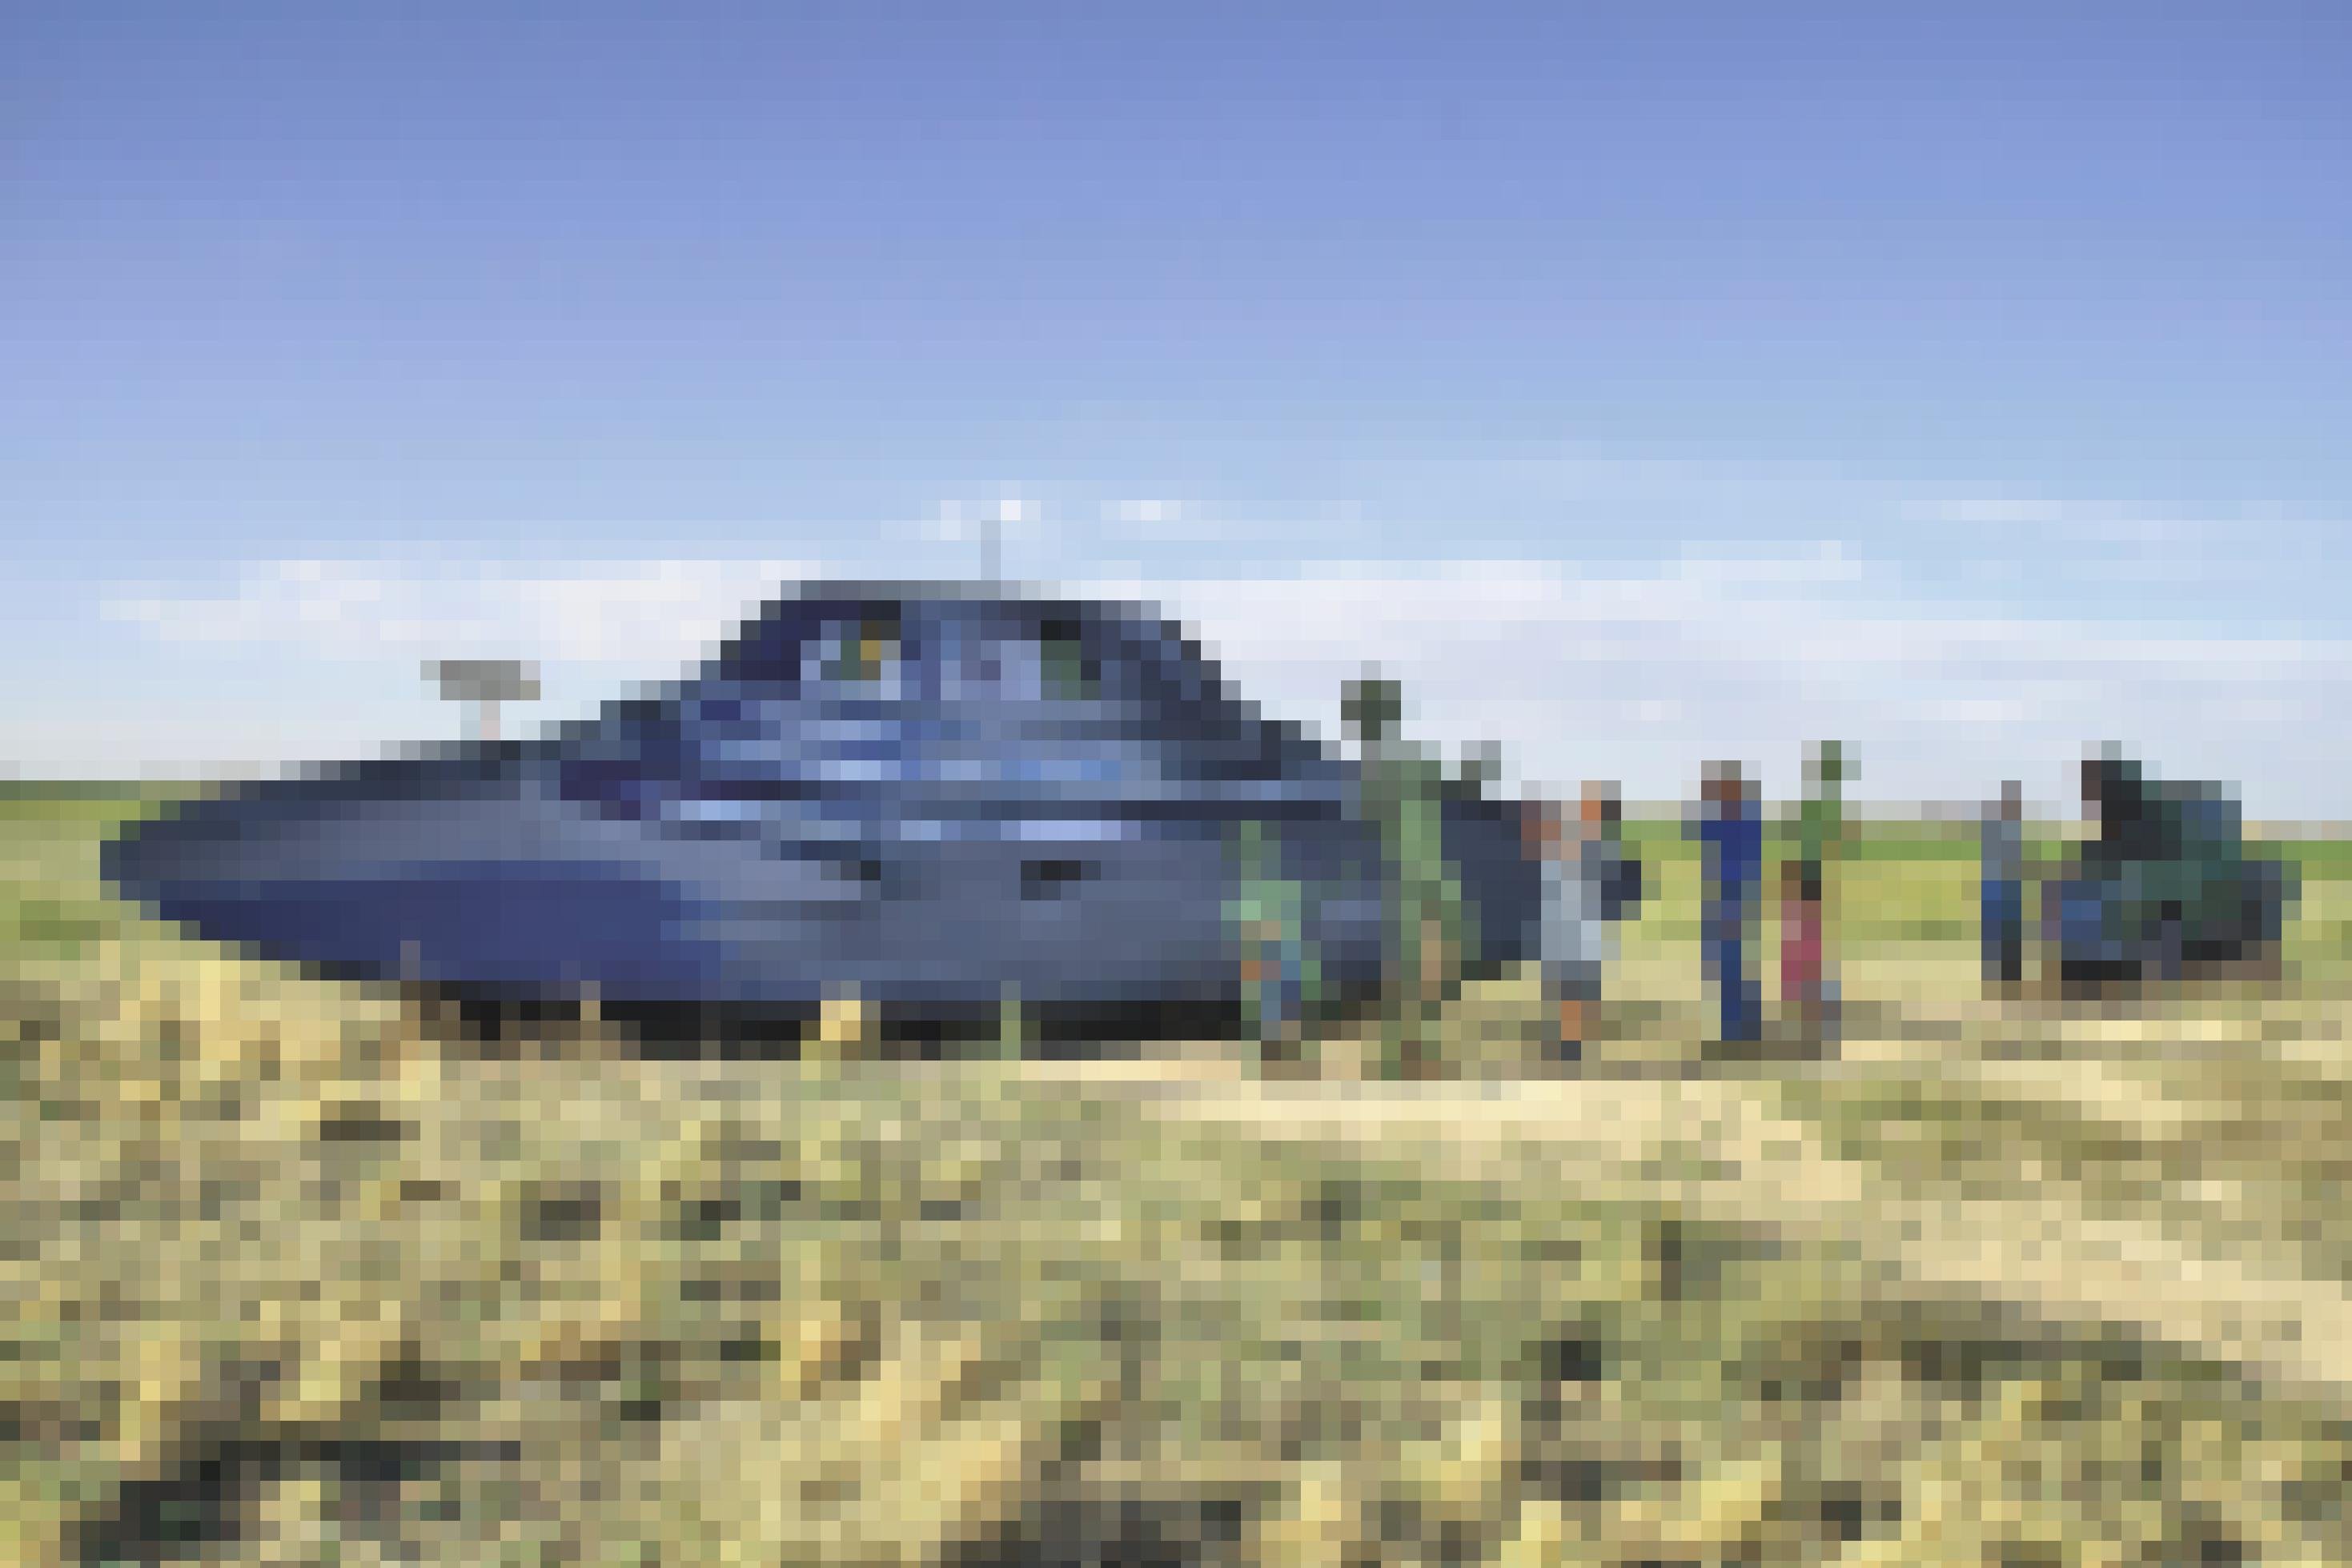 Ein Ufo aus Pappe liegt auf einem Feld. Daneben stehen Pappfiguren, die wie Farmer aussehen und dem Ufo „Starthilfe“ geben.